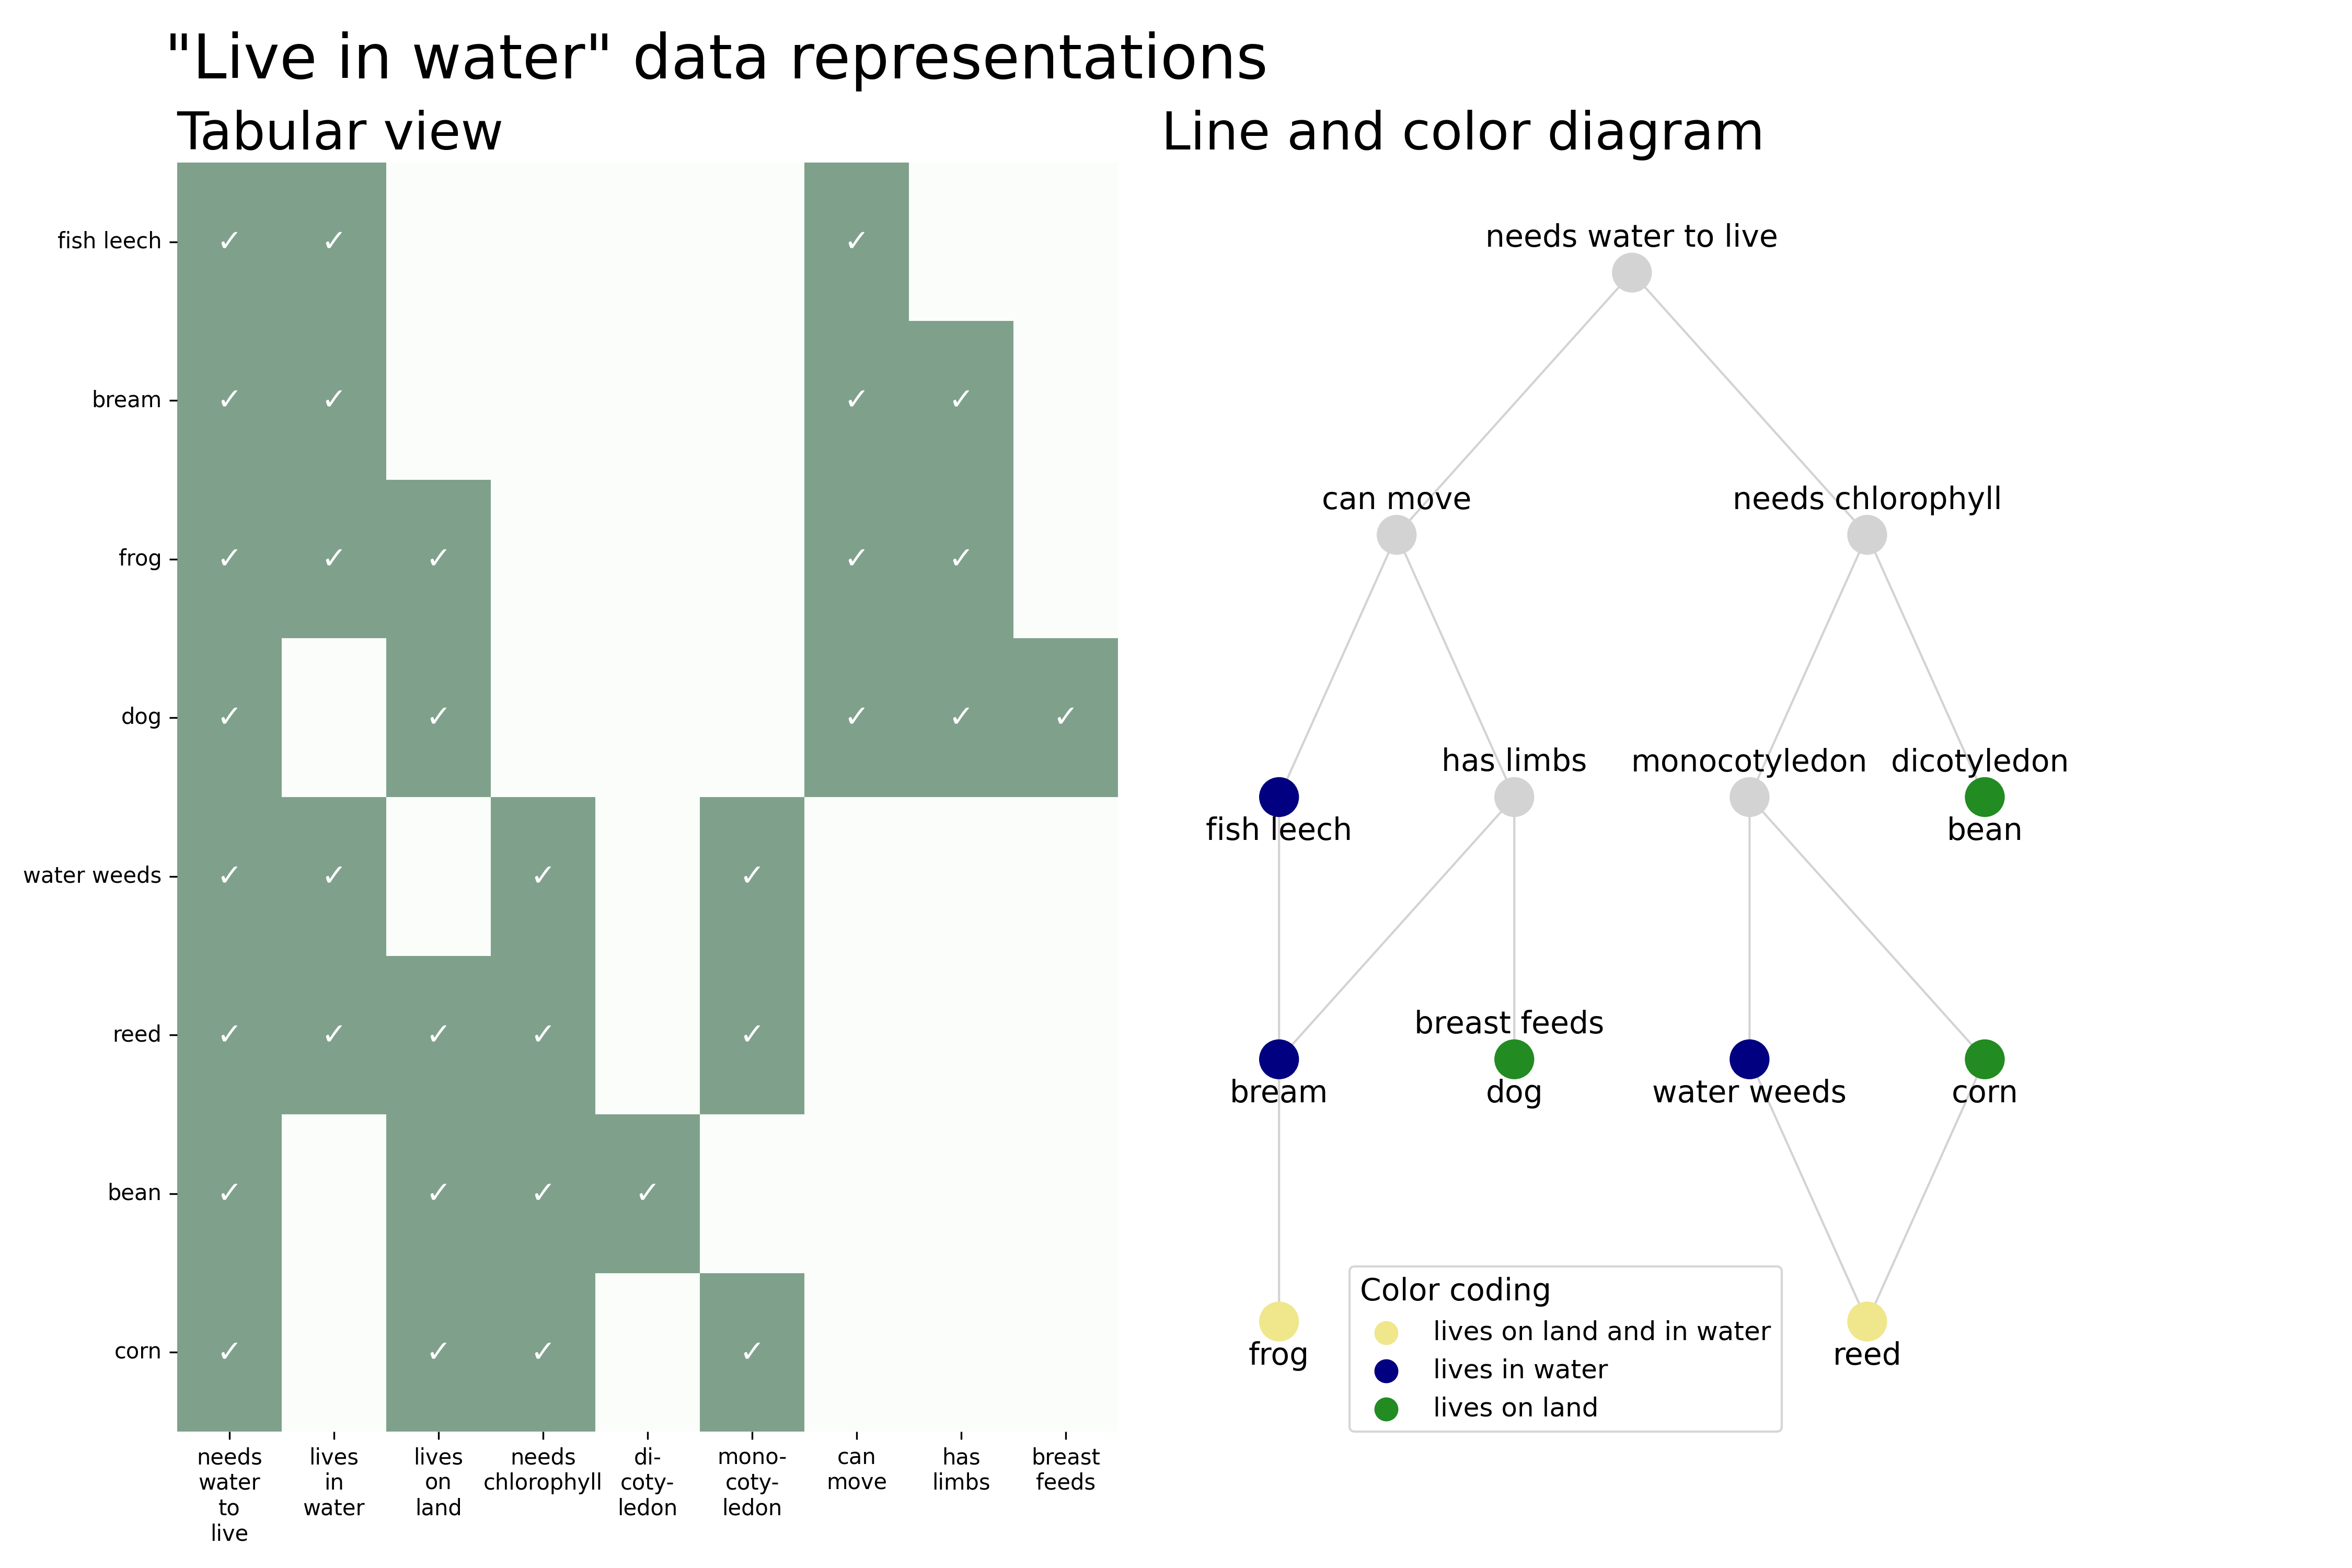 Live in water representation comparison